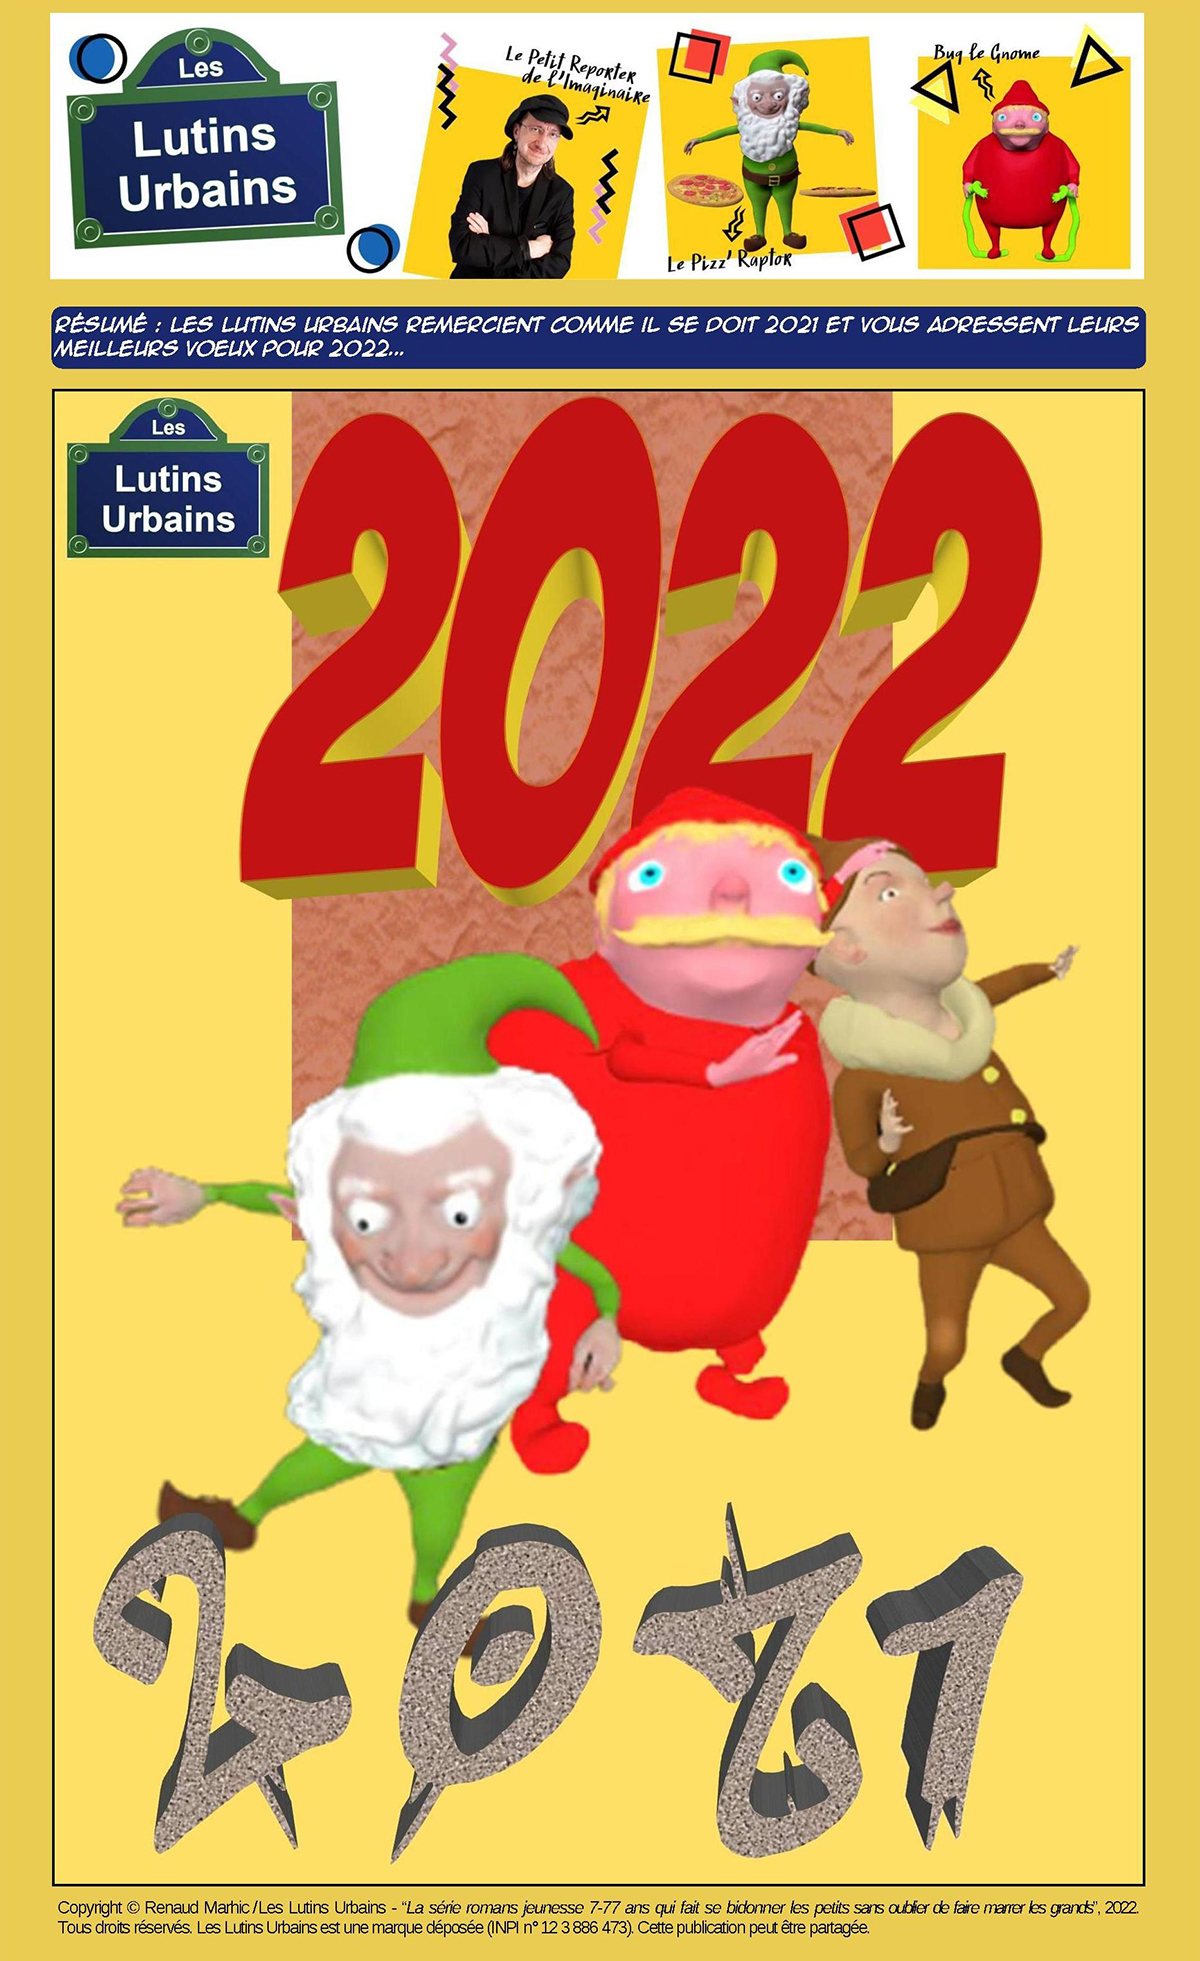 Les vœux des Lutins Urbains pour 2022